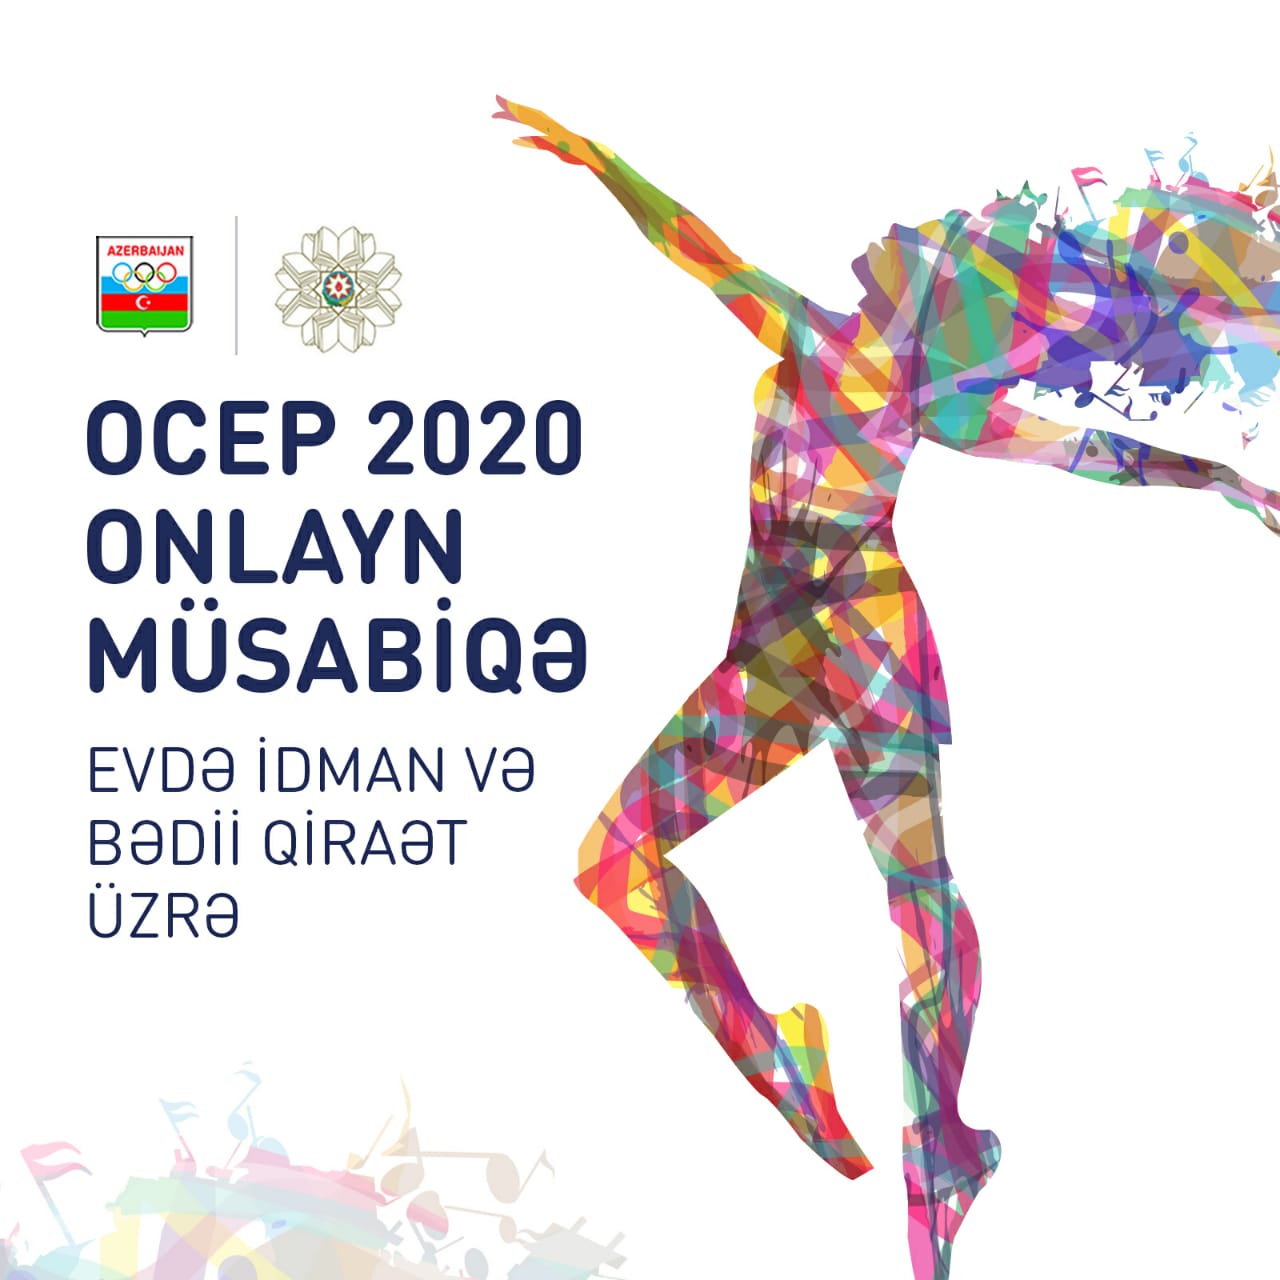 OCEP 2020:​ &ldquo;Evdə idman və Bədii Qiraət&rdquo; üzrə online müsabiqə